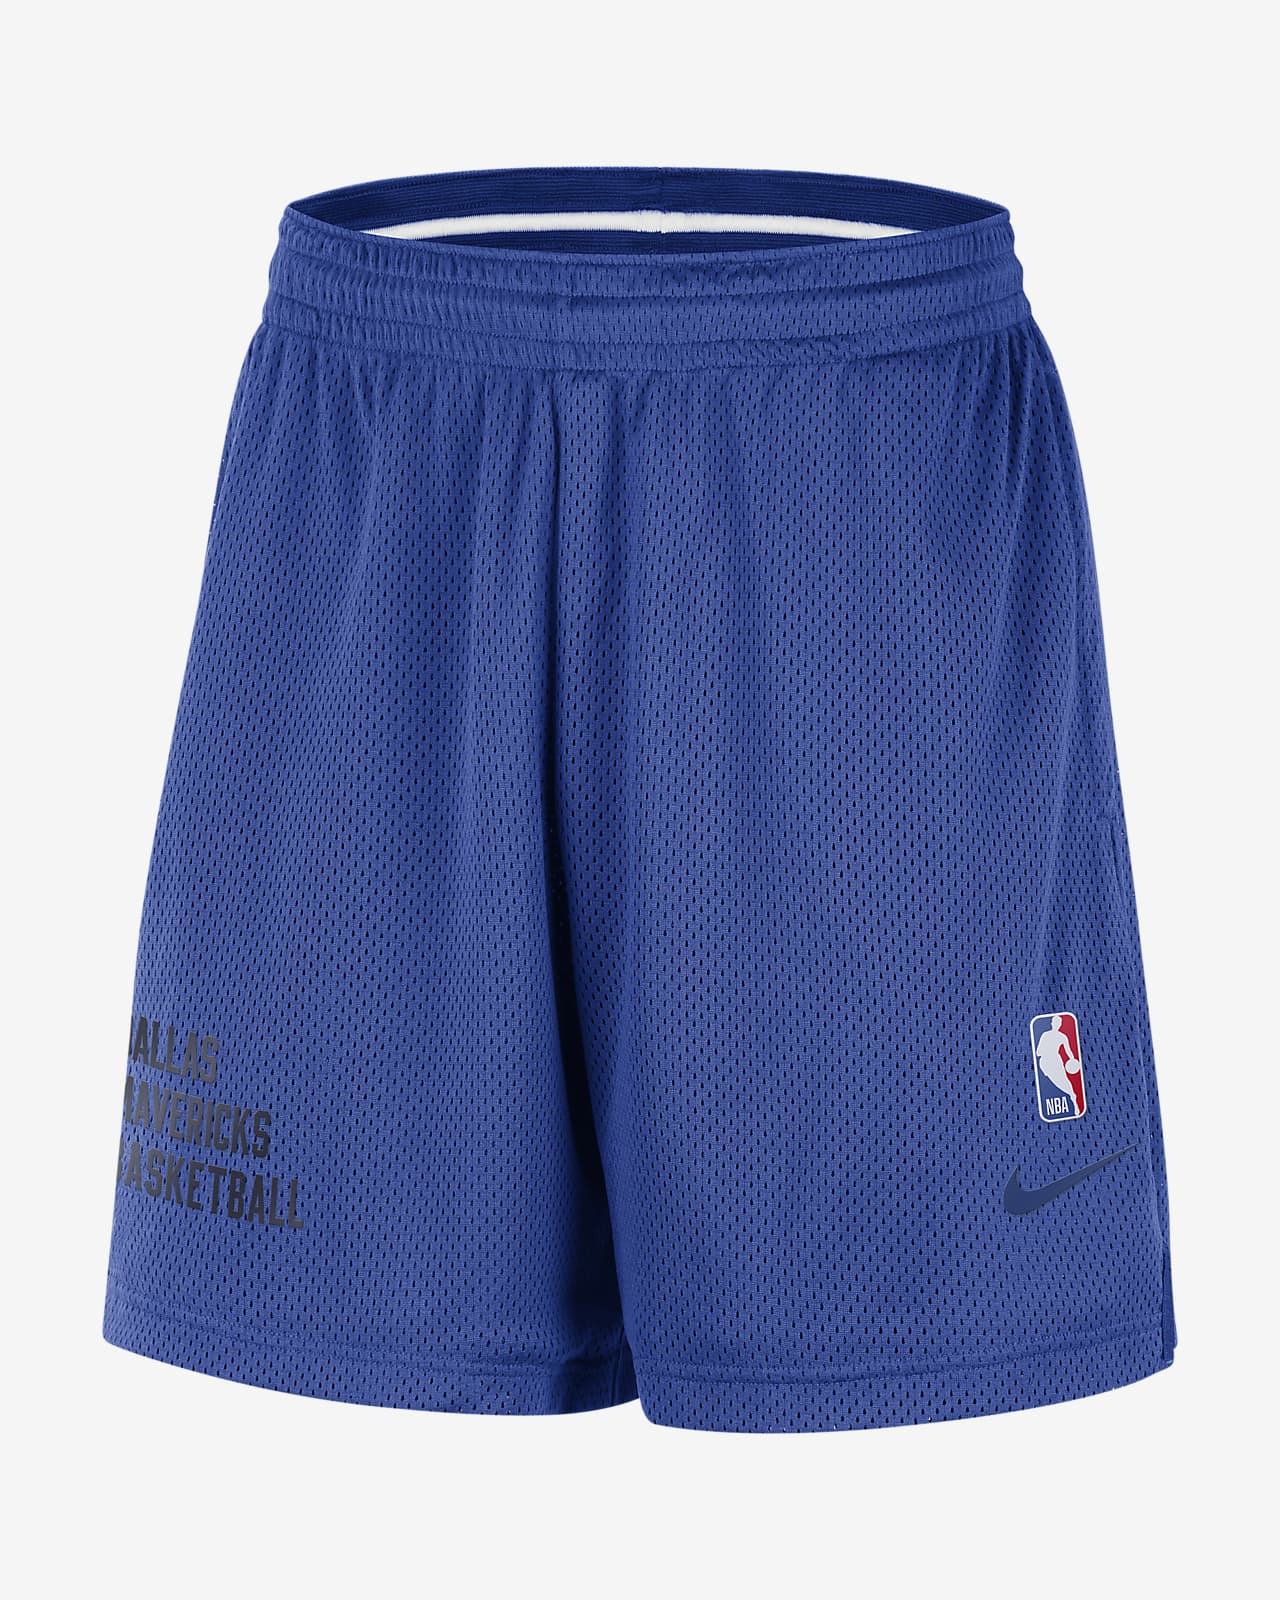 Dallas Mavericks Men's Nike NBA Mesh Shorts